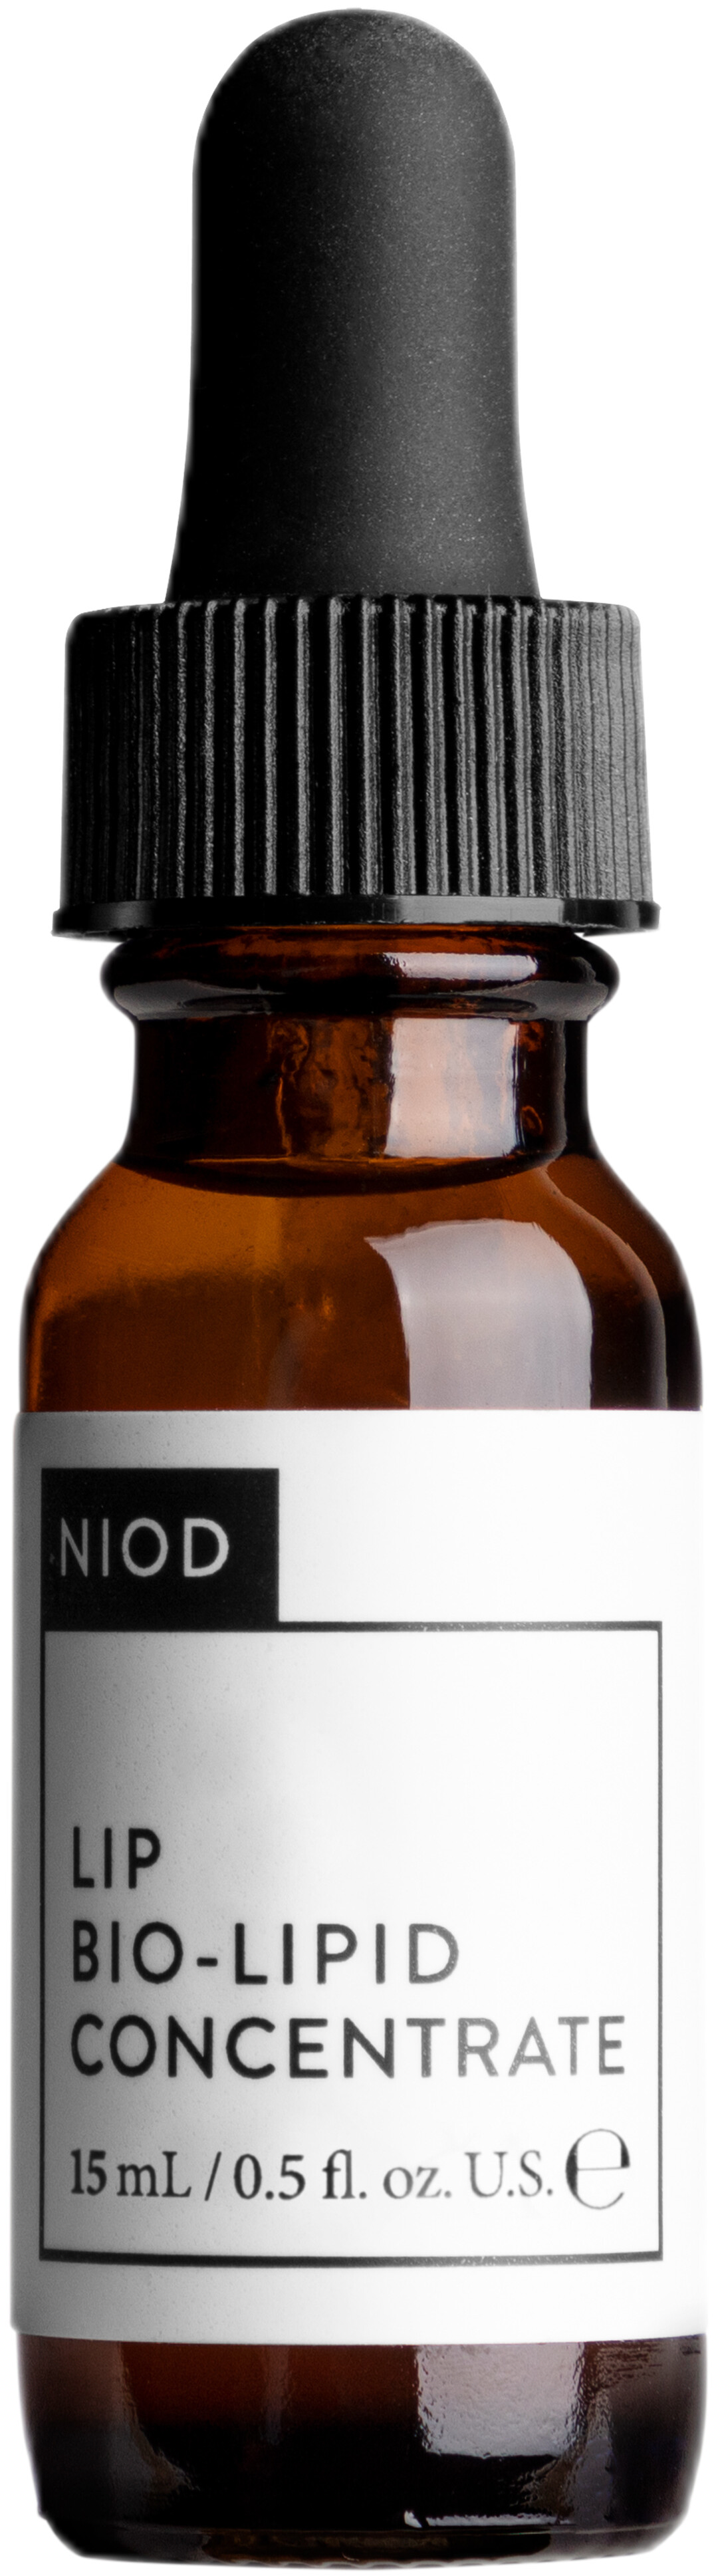 NIOD Lip Bio-Lipid Concentrate 15ml